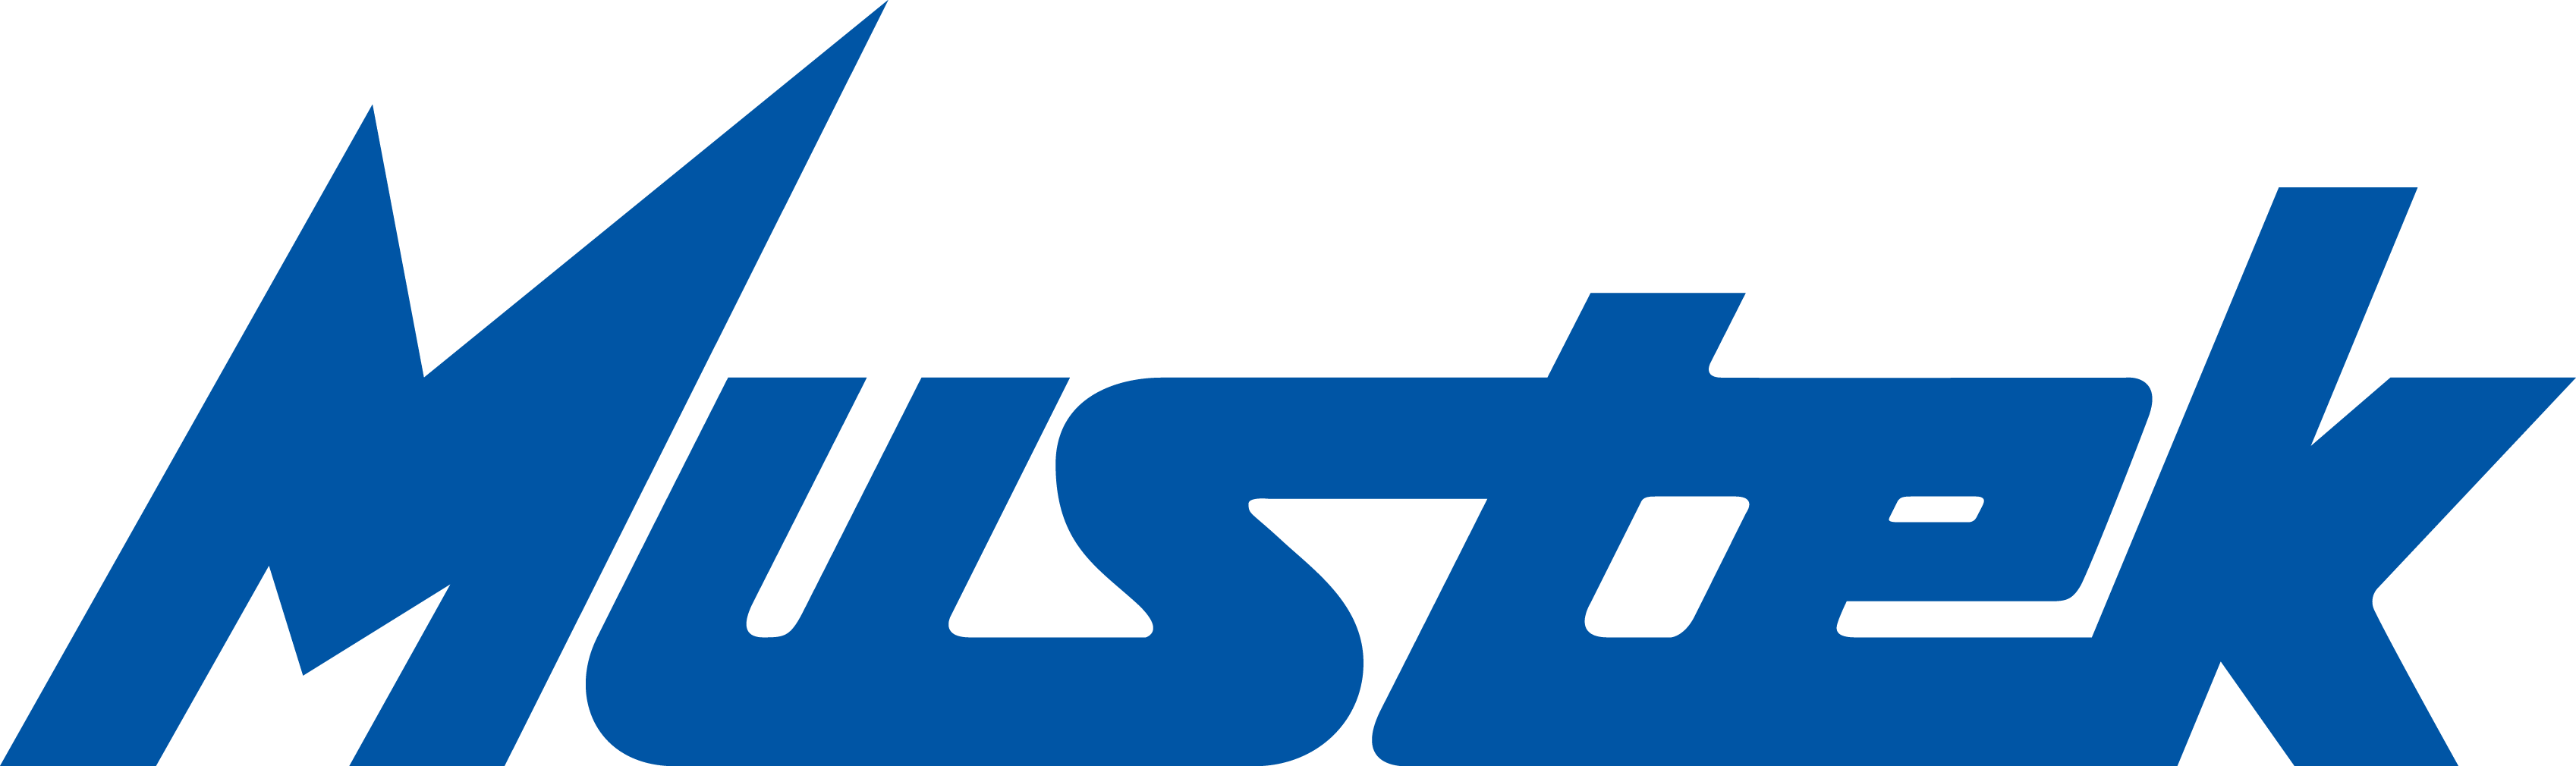 Mustek Brand Logo